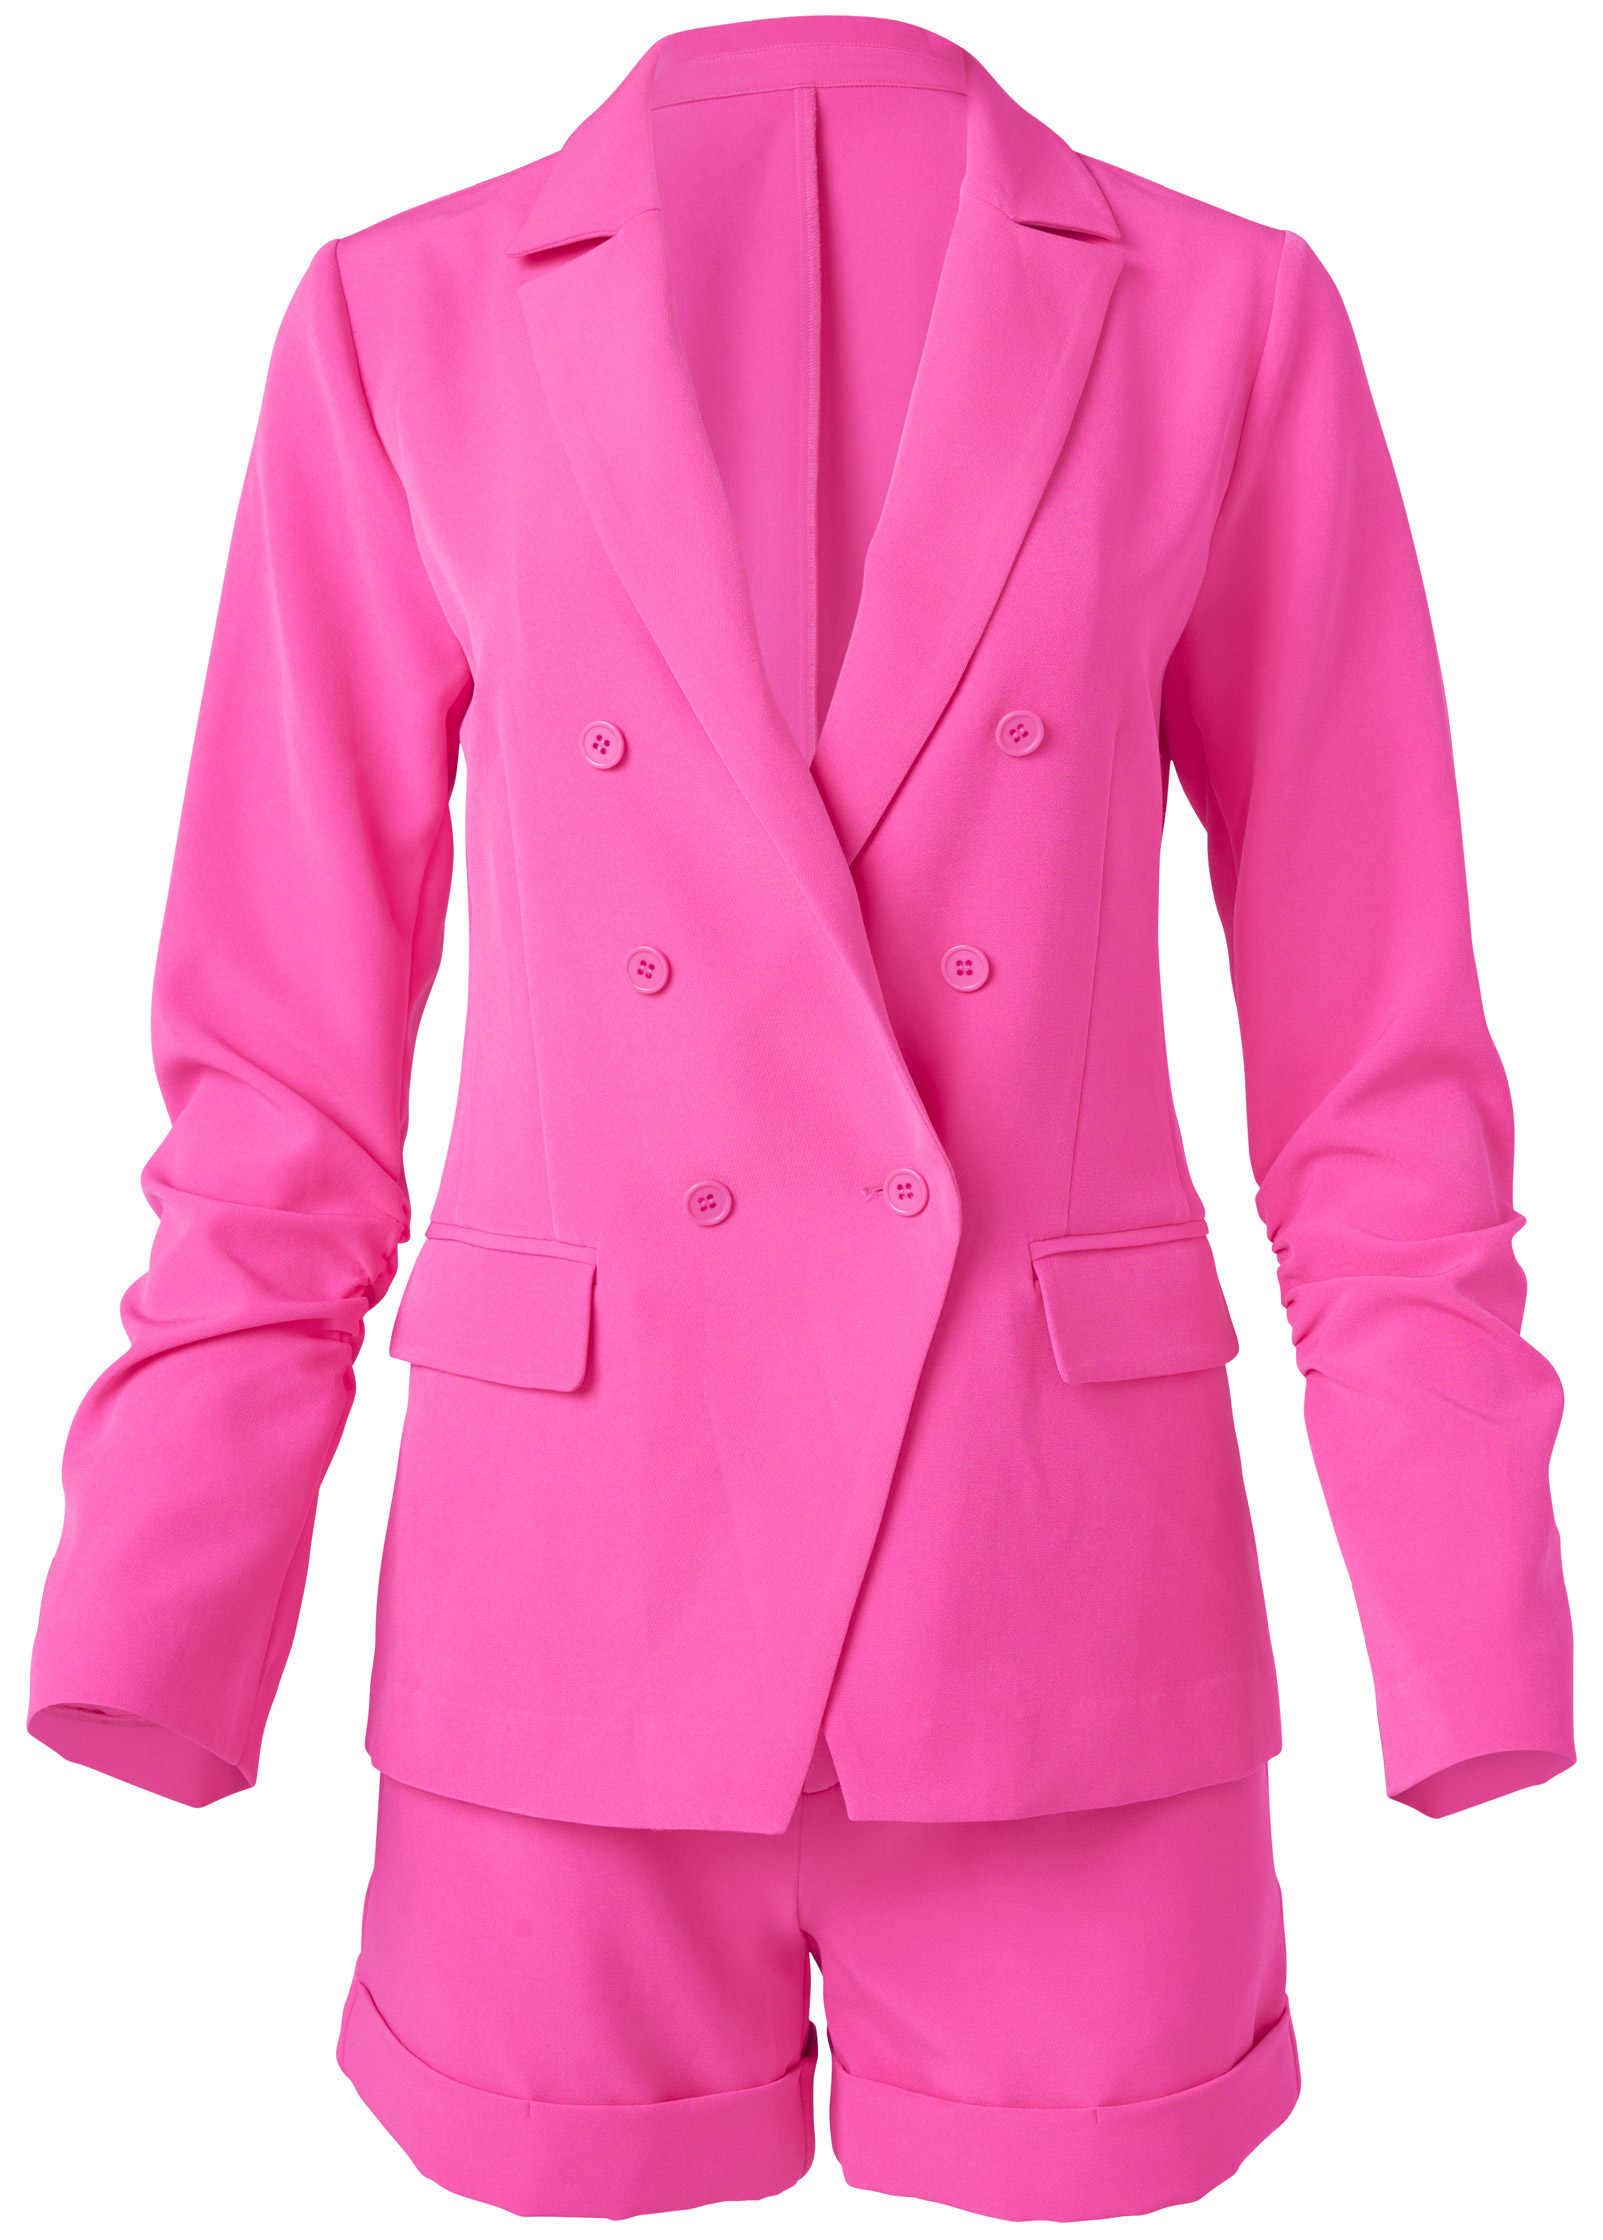 hot pink short suit